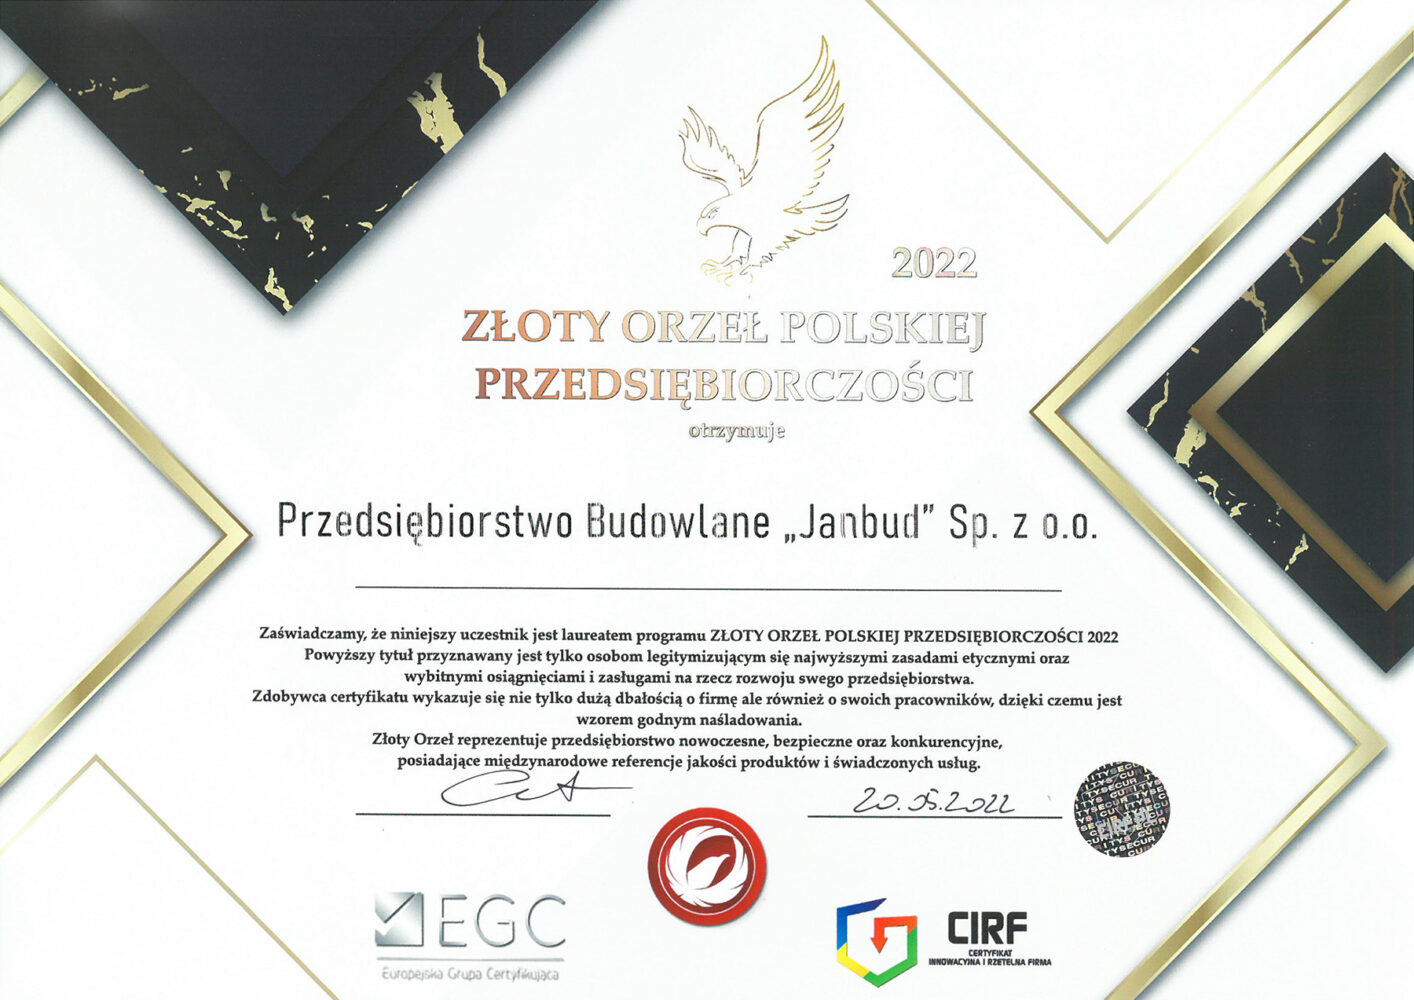 (Polski) Złoty Orzeł Polskiej Przedsiębiorczości